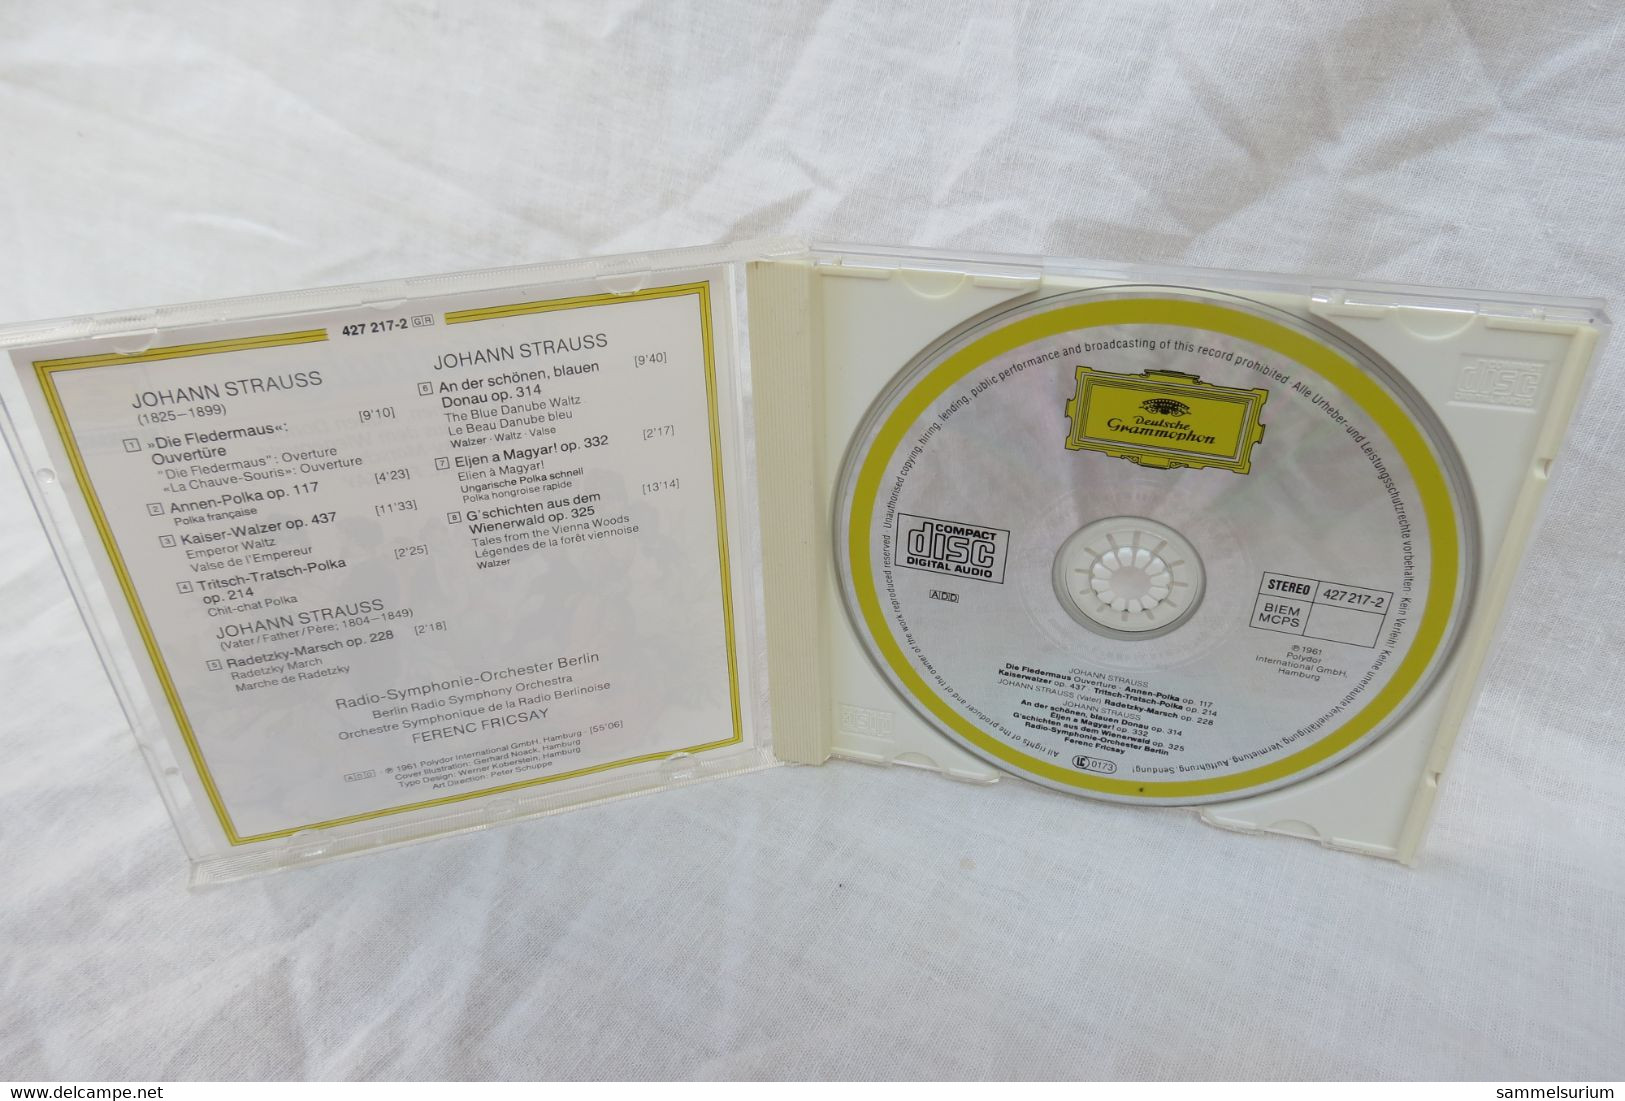 CD "Kaiserwalzer" An Der Schönen Blauen Donau, Deutsche Grammophon - Opere